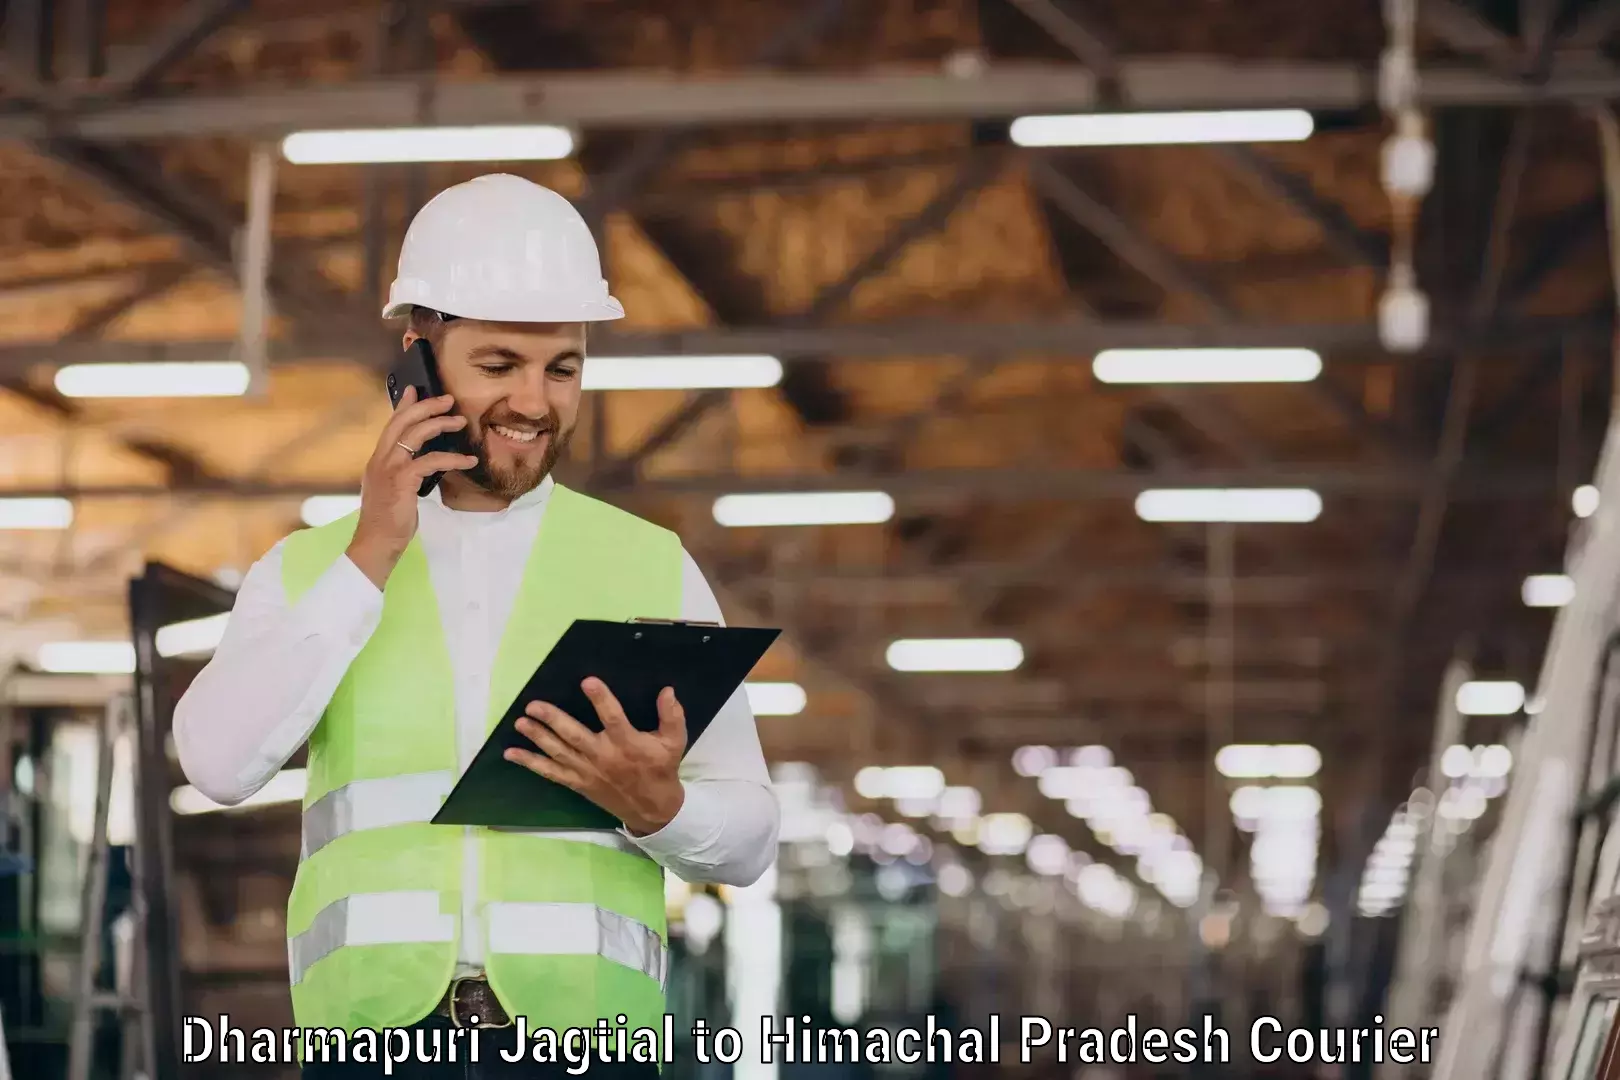 Digital courier platforms Dharmapuri Jagtial to IIIT Una